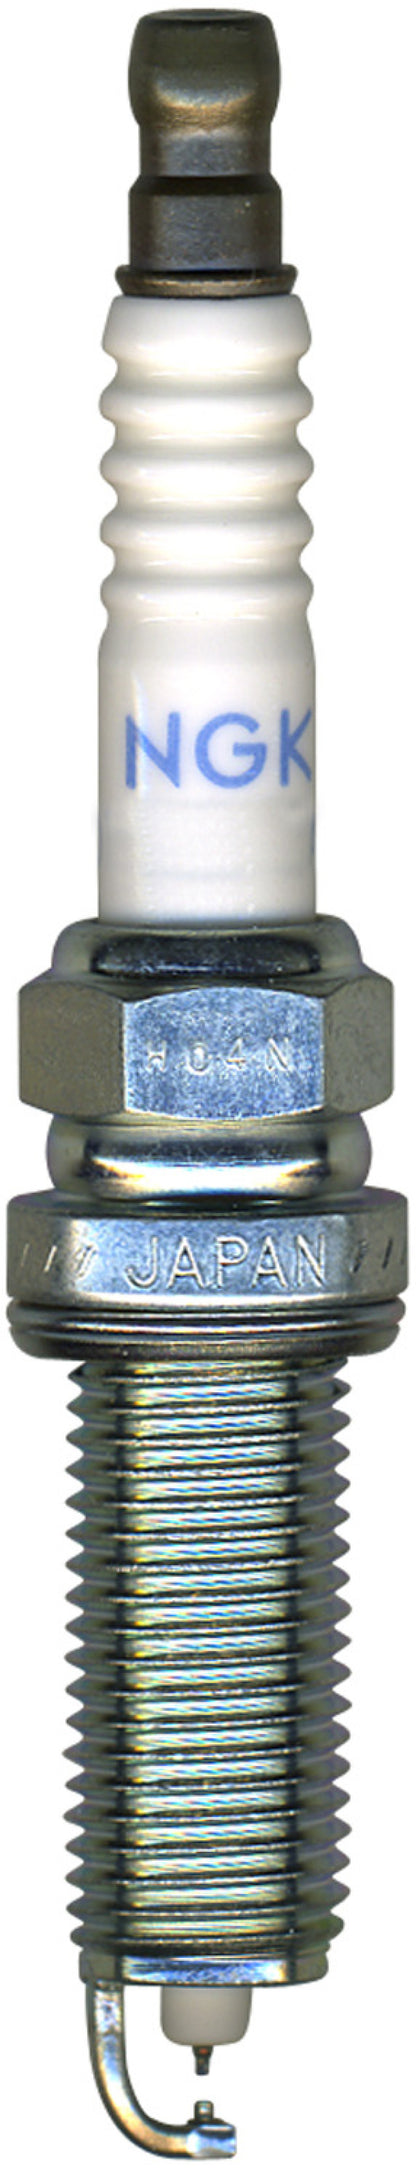 NGK Laser Iridium Spark Plug Box of 4 (DILKAR7C9H)